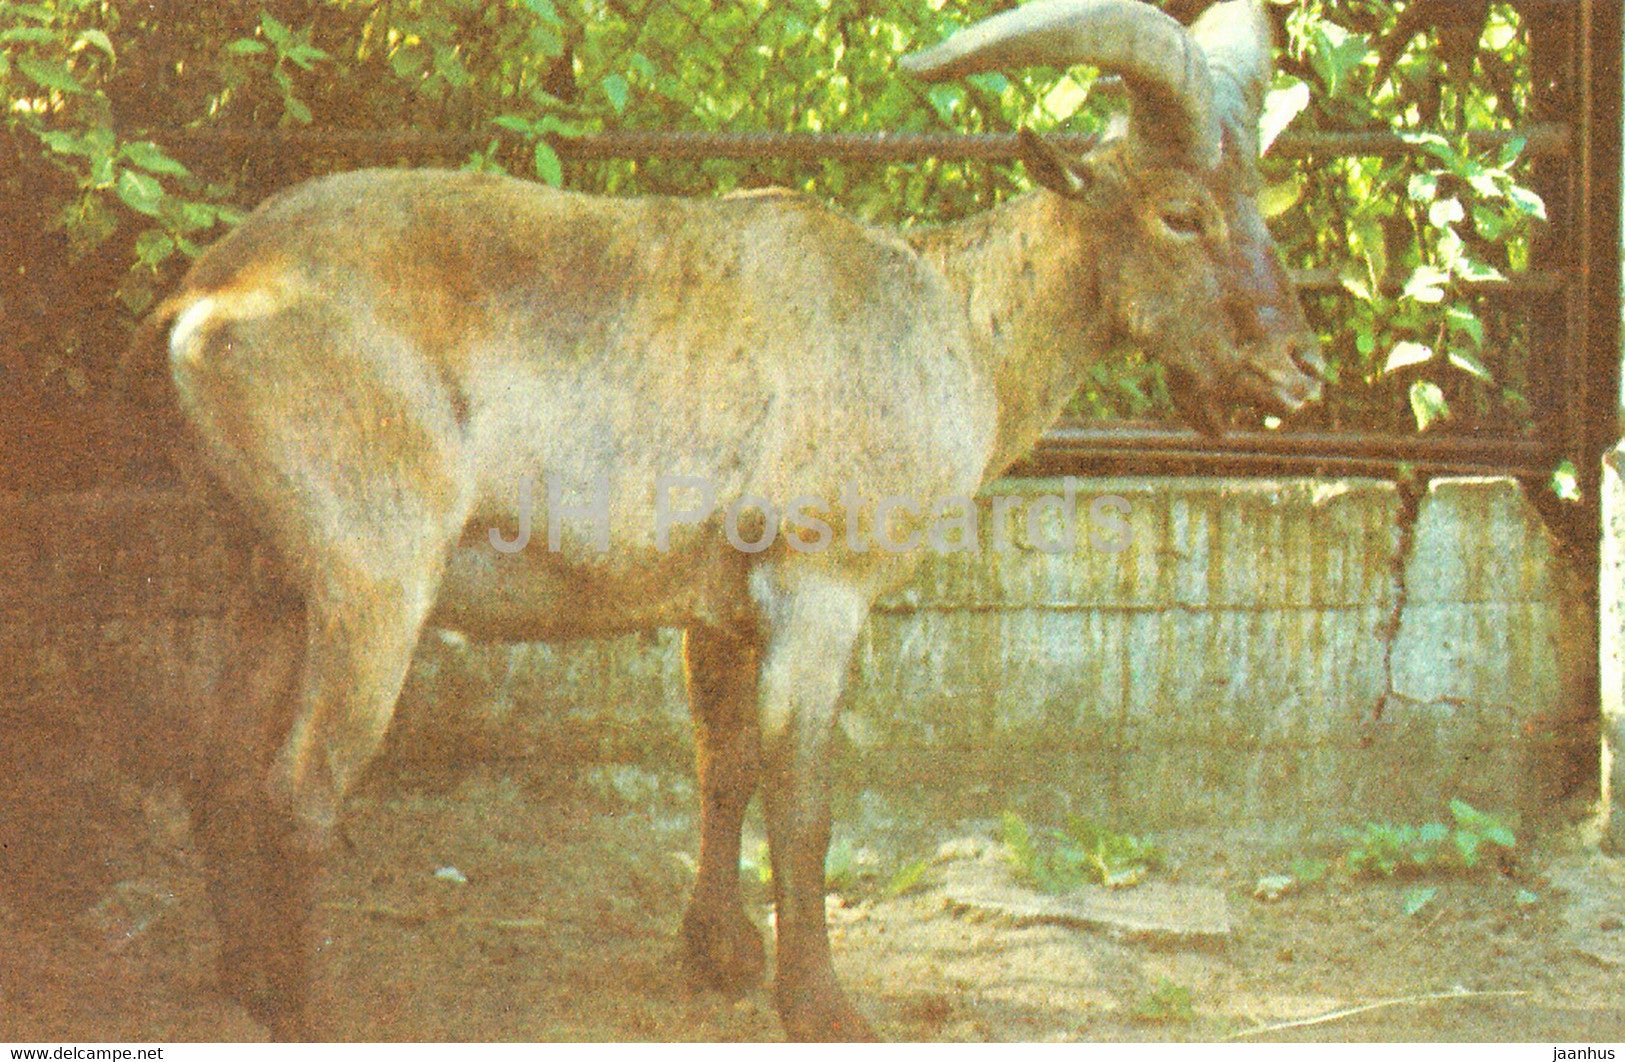 East Caucasian tur - Capra cylindricornis - Riga Zoo - Latvia USSR - unused - JH Postcards